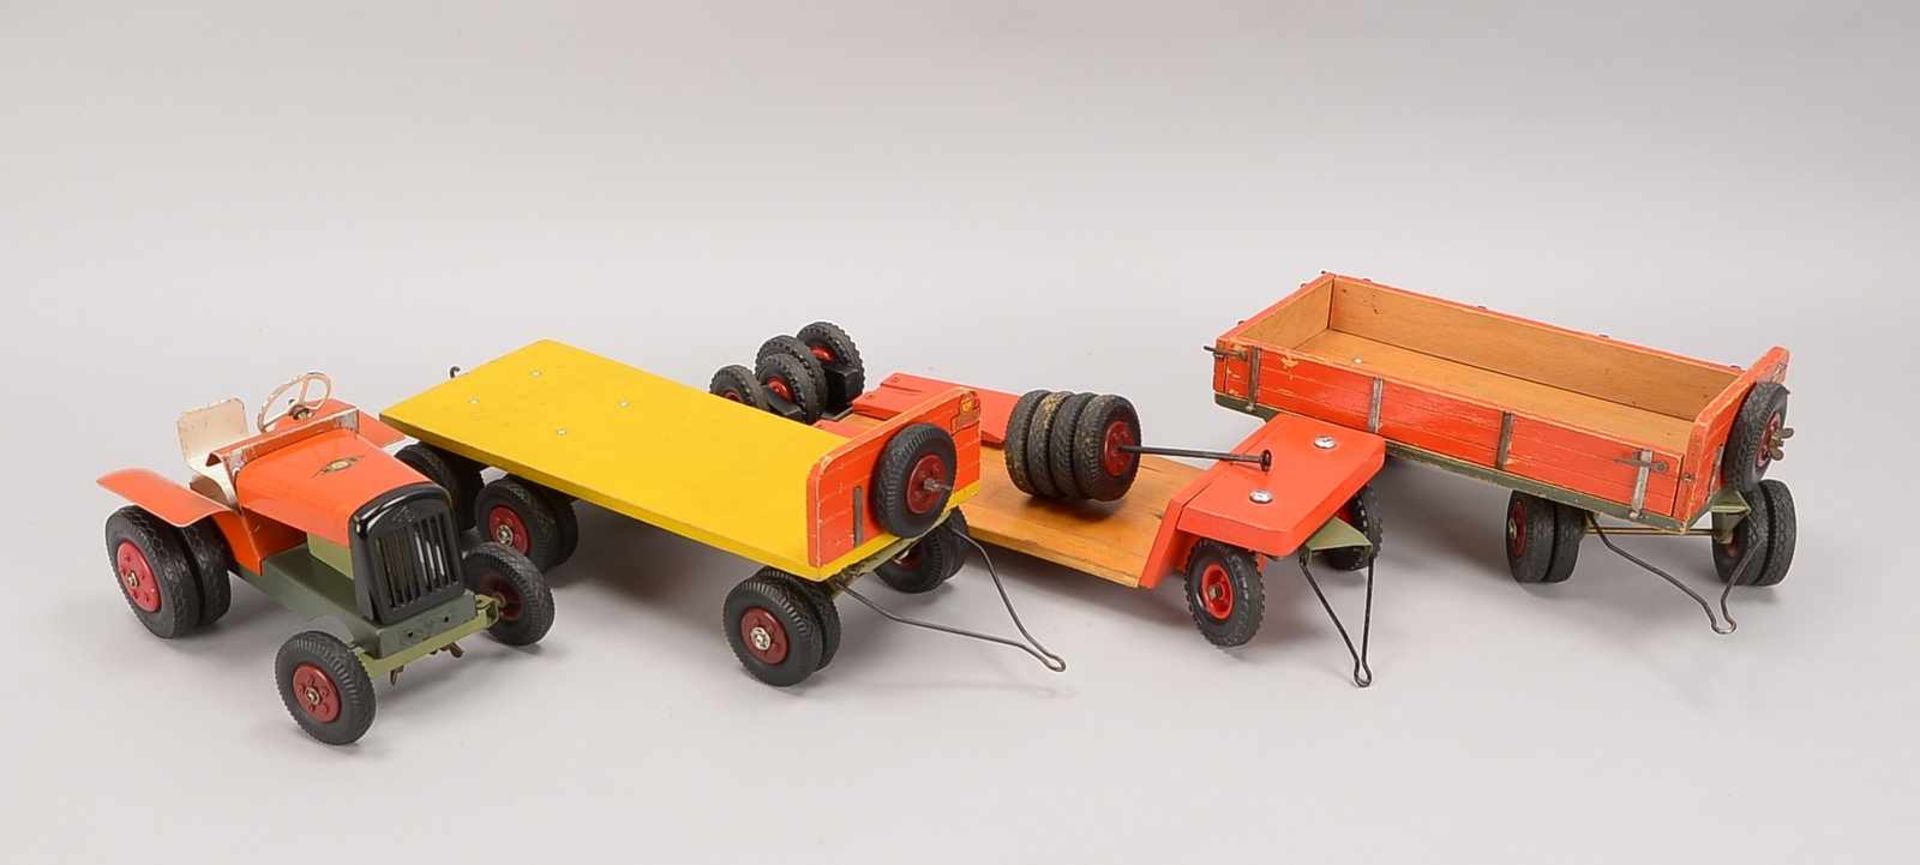 Spielzeugtrecker, Steiff, 1950er Jahre, Holz/Blech, mit 3x Anhängern, gemarkt ('Steiff' und ' - Bild 3 aus 3